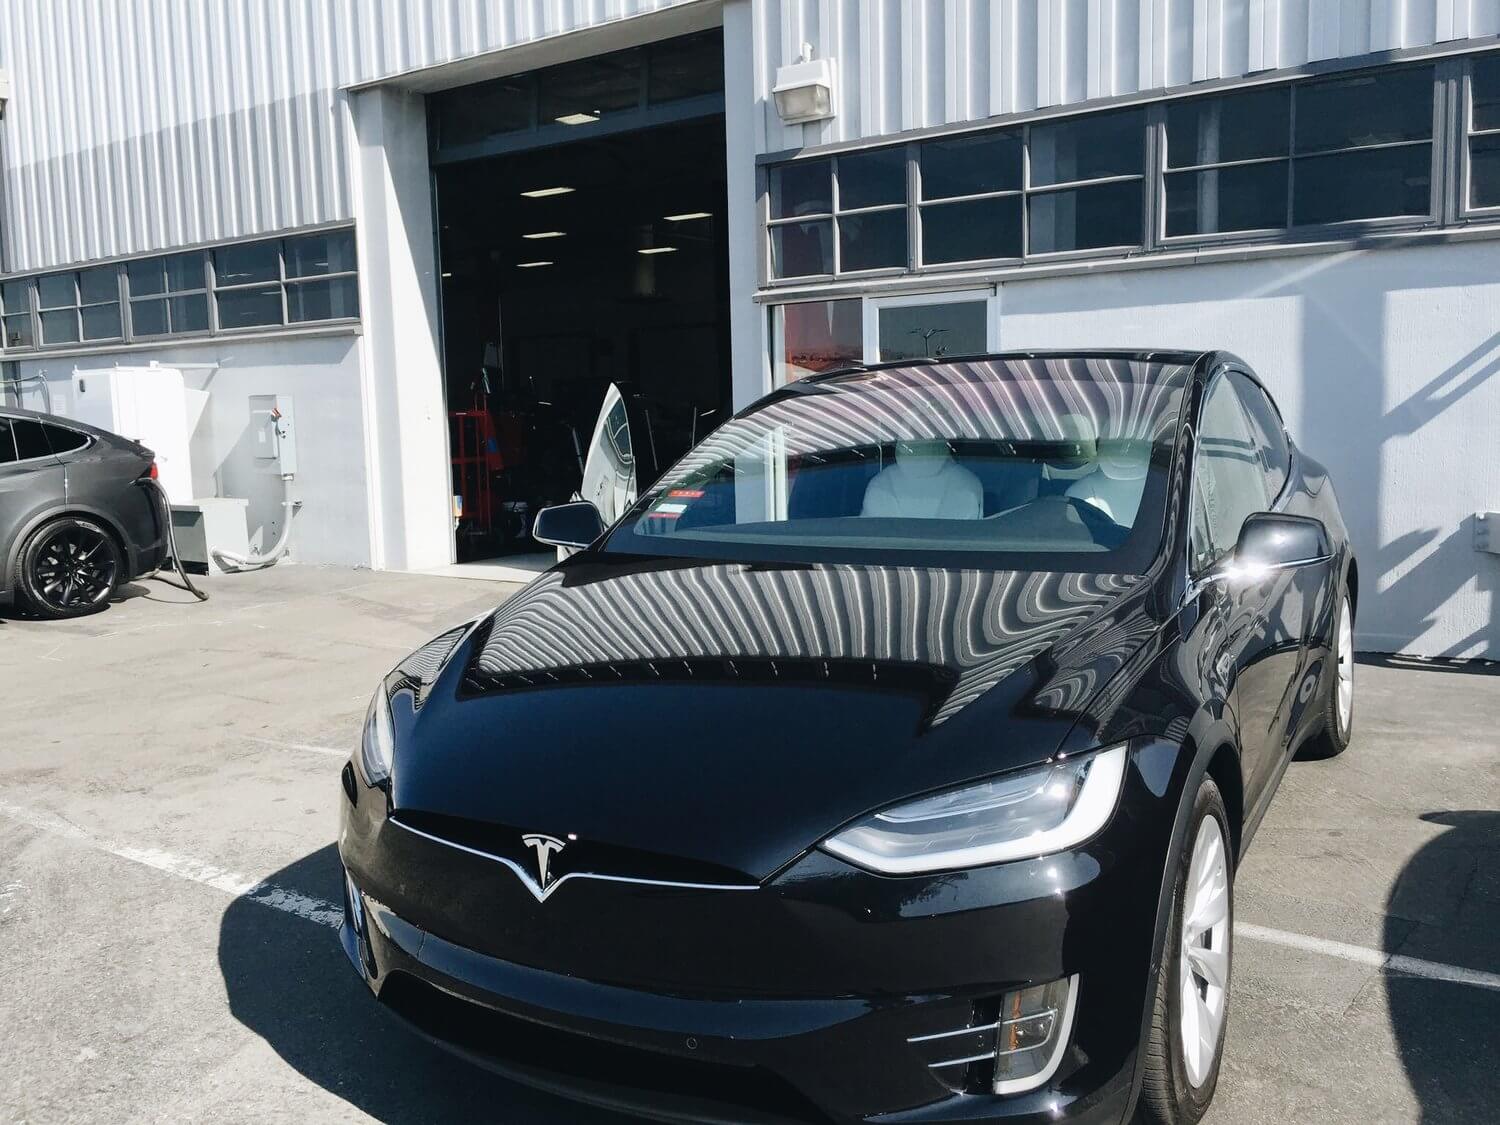 Каршеринговая Tesla Model X 90D, названная Deuxy («Doo-ee»)